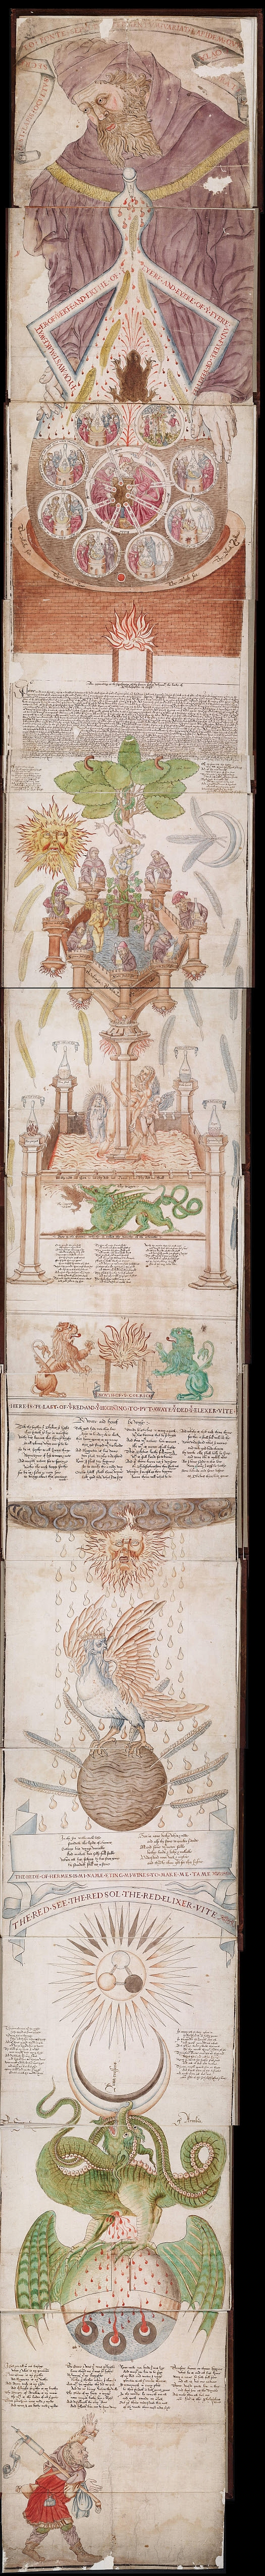 Ripley Scroll - 15th century emblematic alchemy manuscript